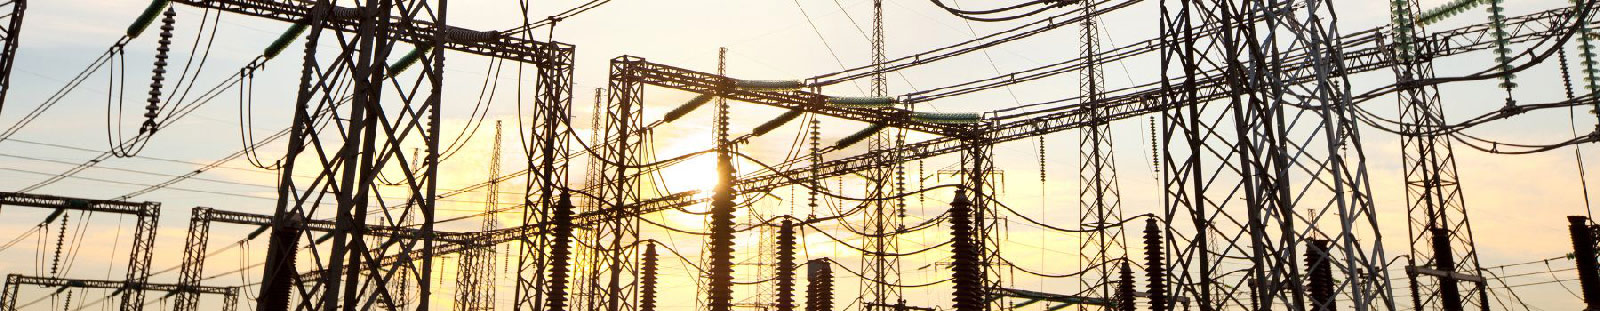 Stromnetz bei Sonnenuntergang